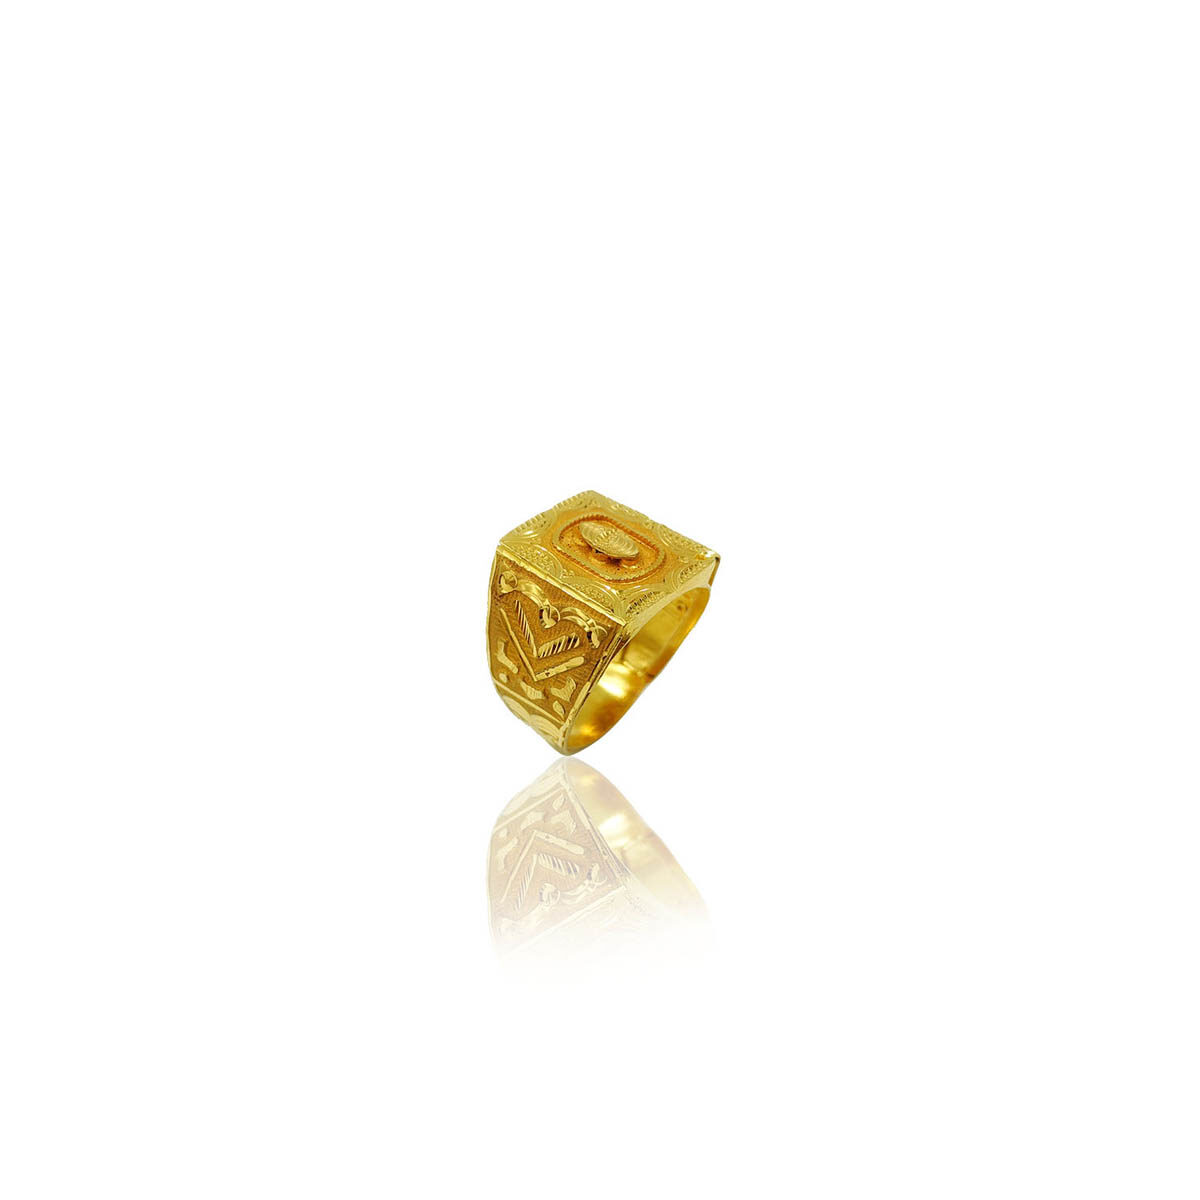 Gold Ring Design: आज हम यहां आपको सोने की अंगूठी के डिज़ाइन दिखाने जा रहे  हैं। जो इस समय सबसे ज्यादा चलन में हैं और जो महिलाएं सबसे ज्यादा पहनना ...